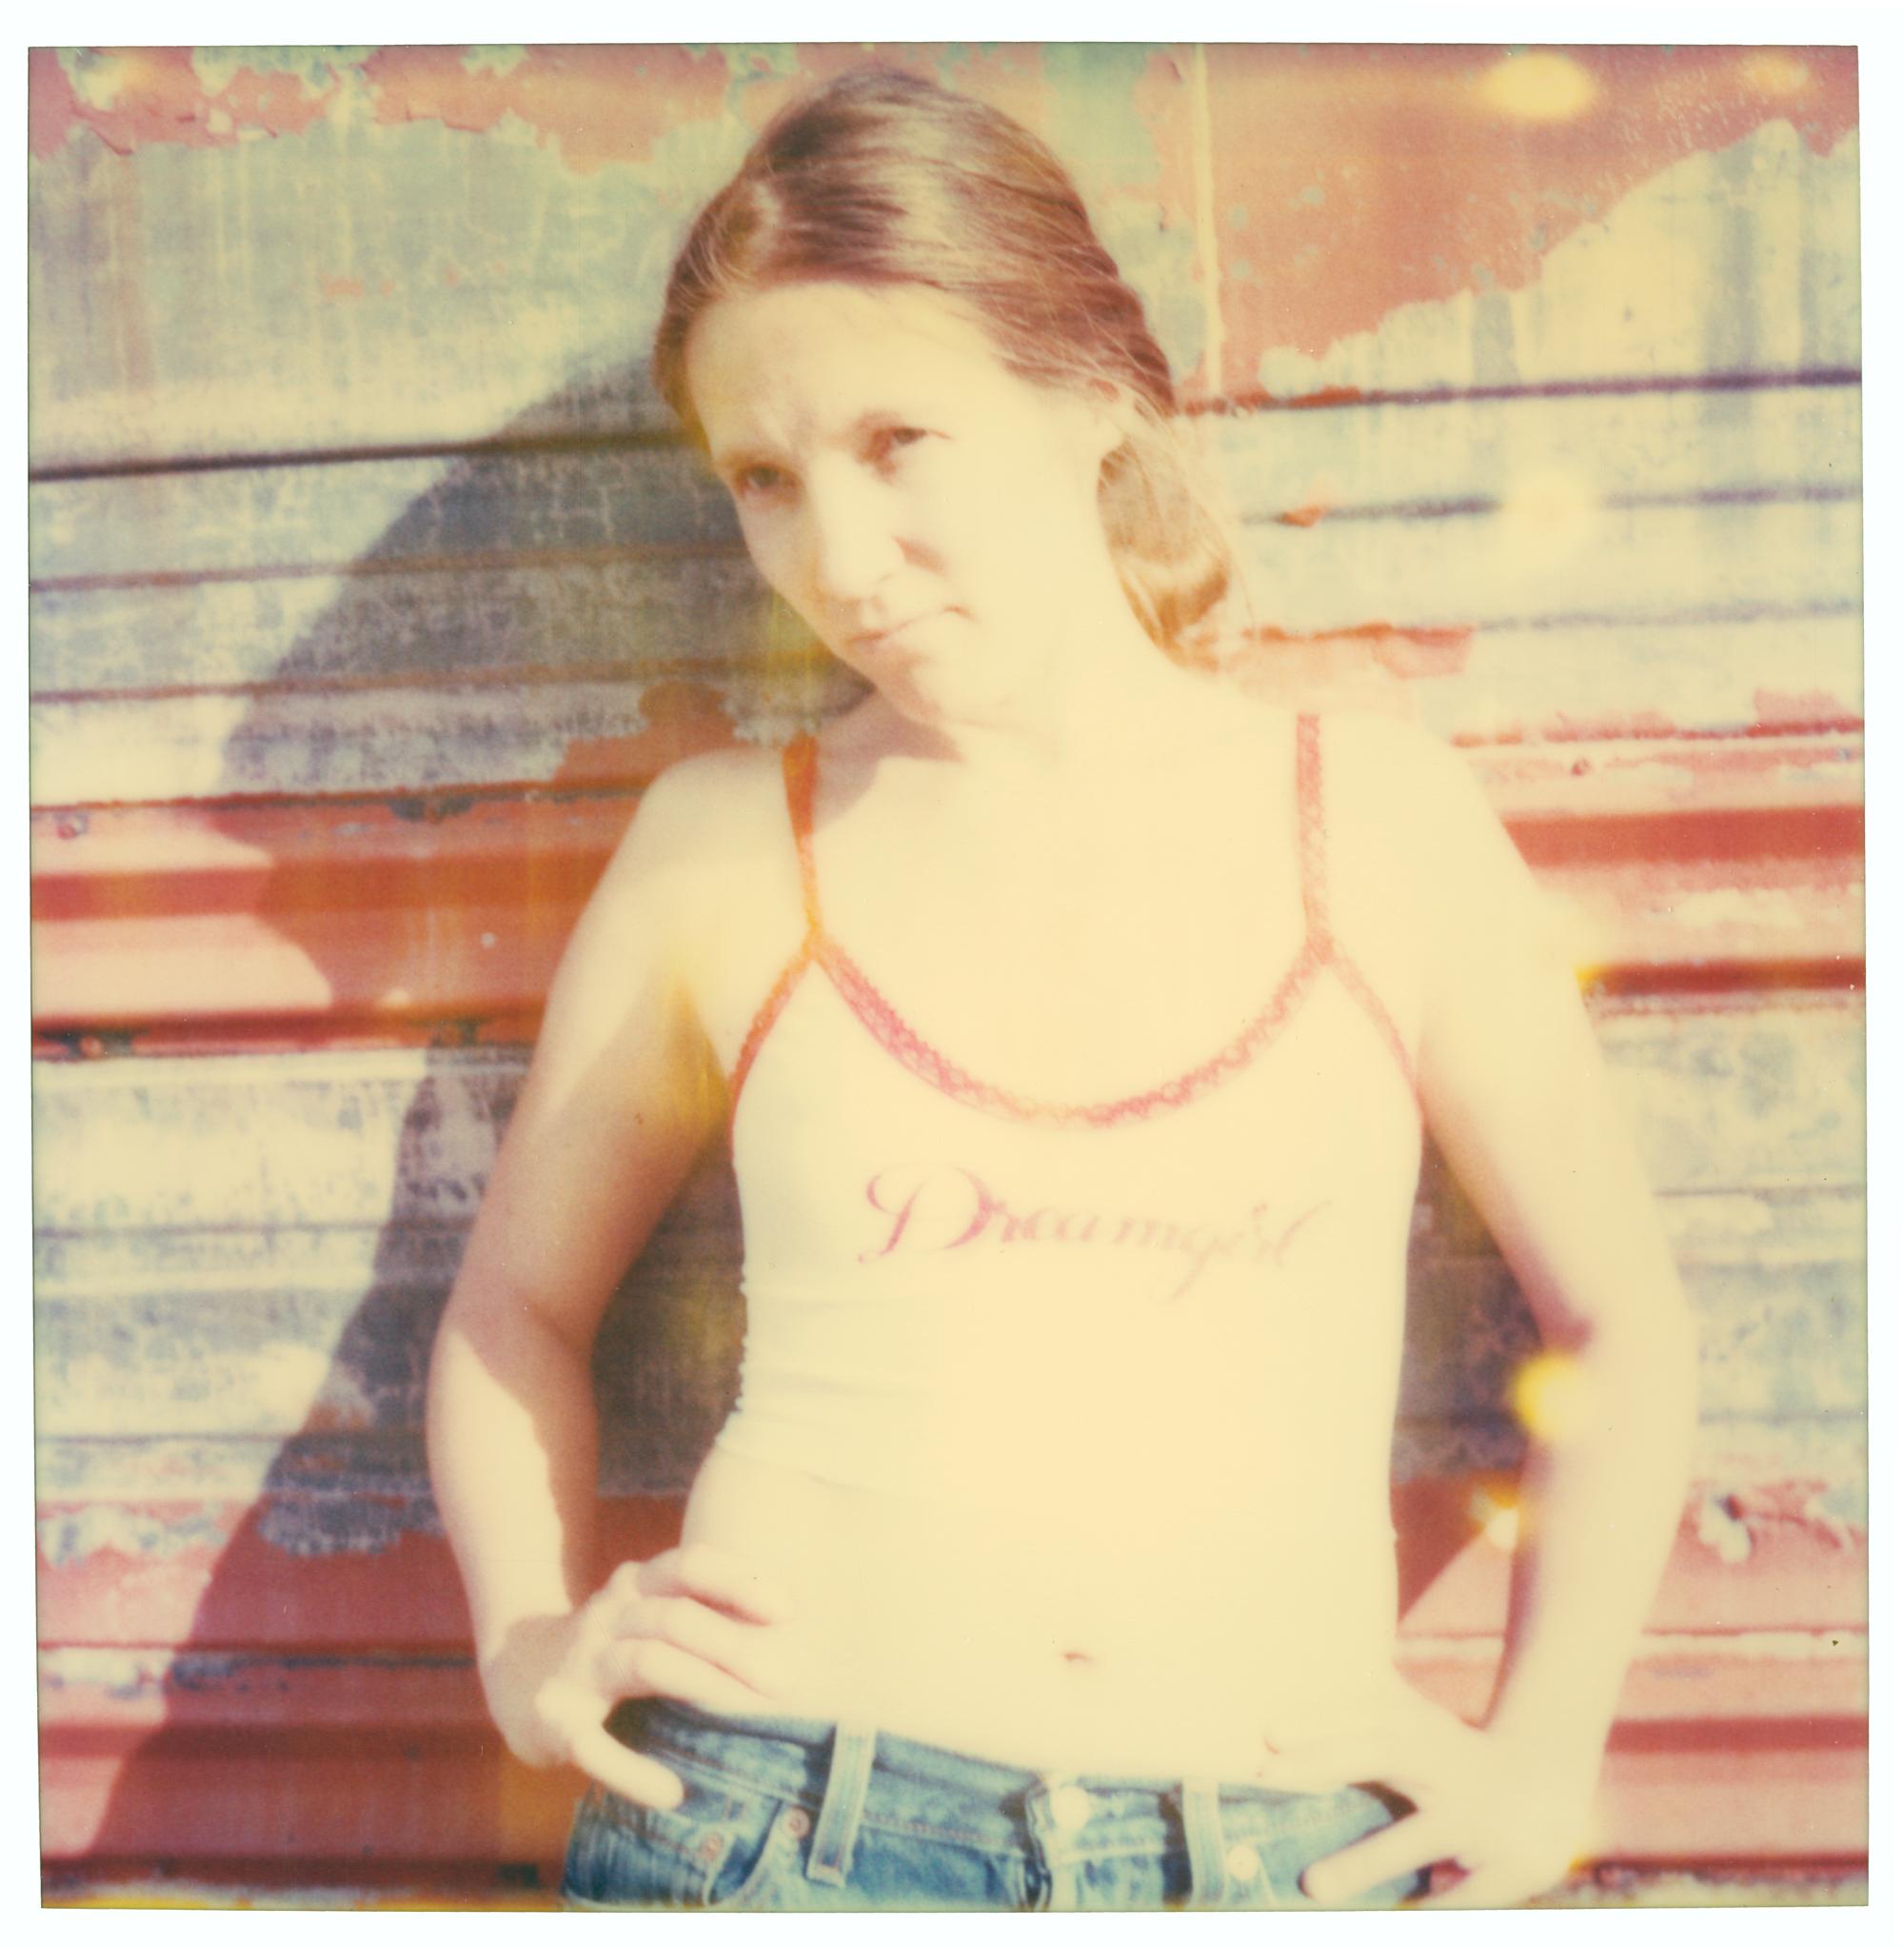 Stefanie Schneider Portrait Photograph – Dreamgirl (Die letzte Bilderausstellung)